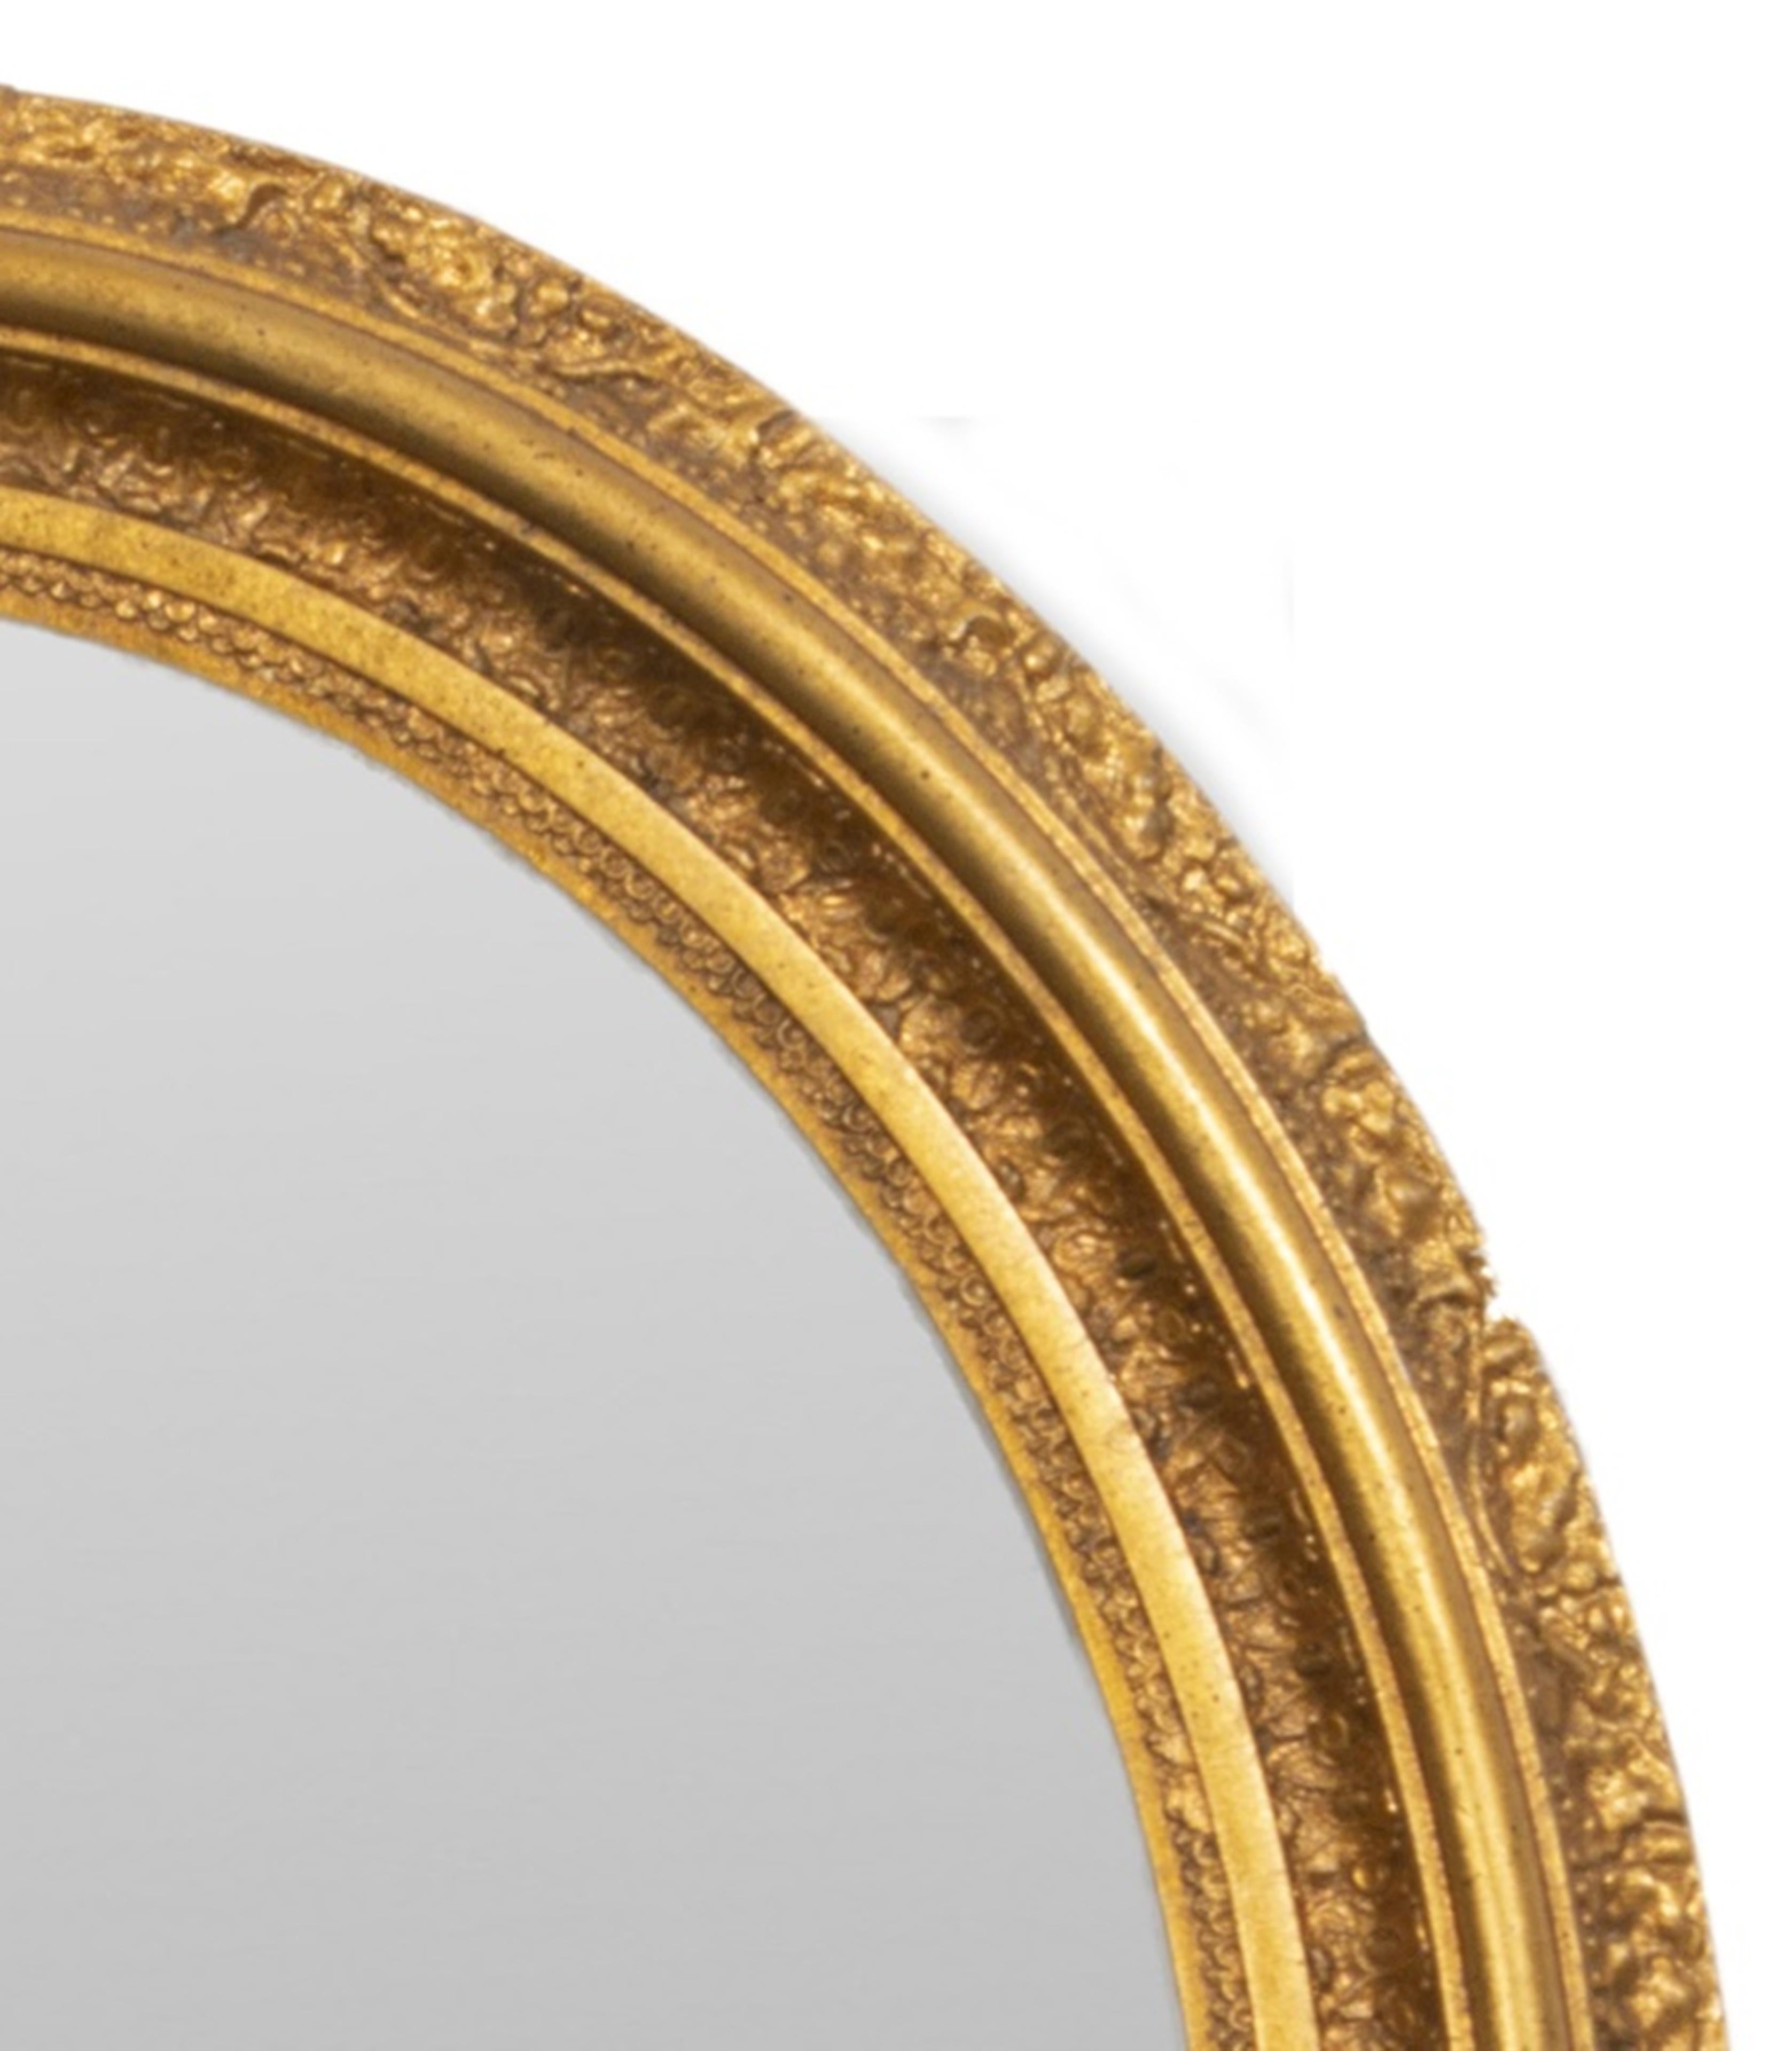 Ovaler Spiegel aus vergoldetem Holz im Rokoko-Stil. Provenienz: Eigentum aus einem Nachlass in der 1199 Park Ave
Abmessungen 30,5